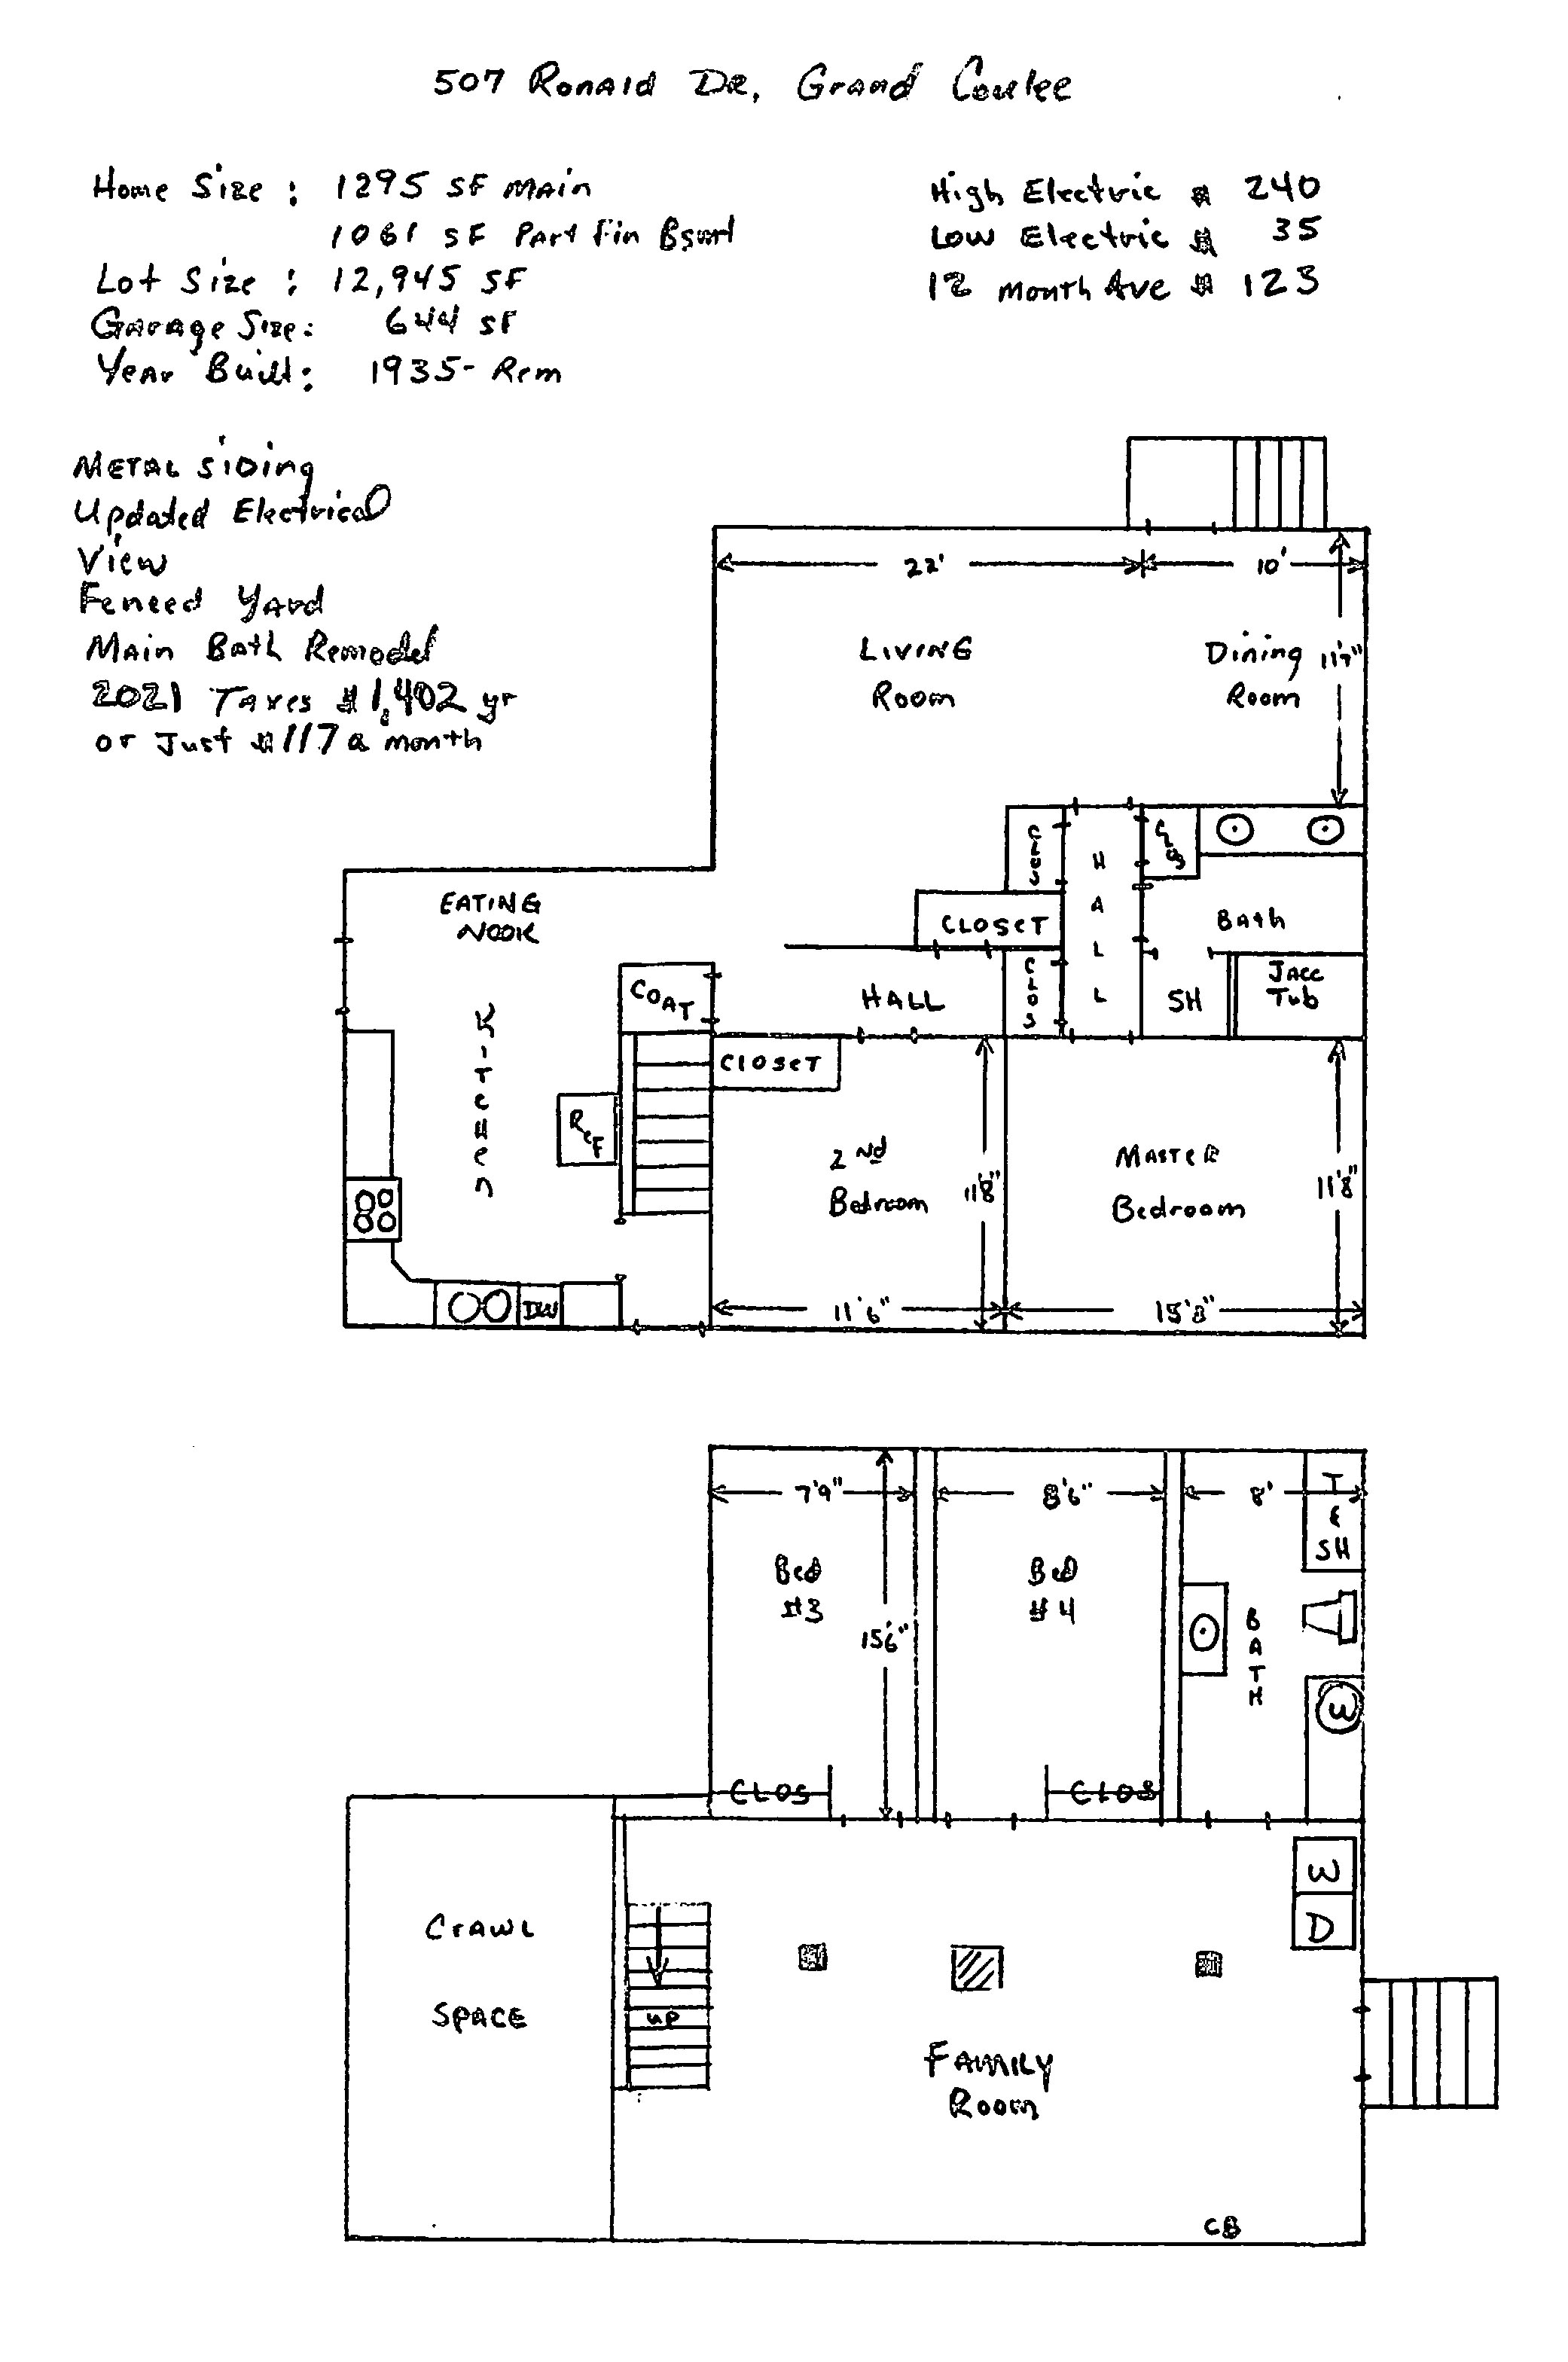 507 Ronald Dr GC Floor plan 07 02 a.jpg